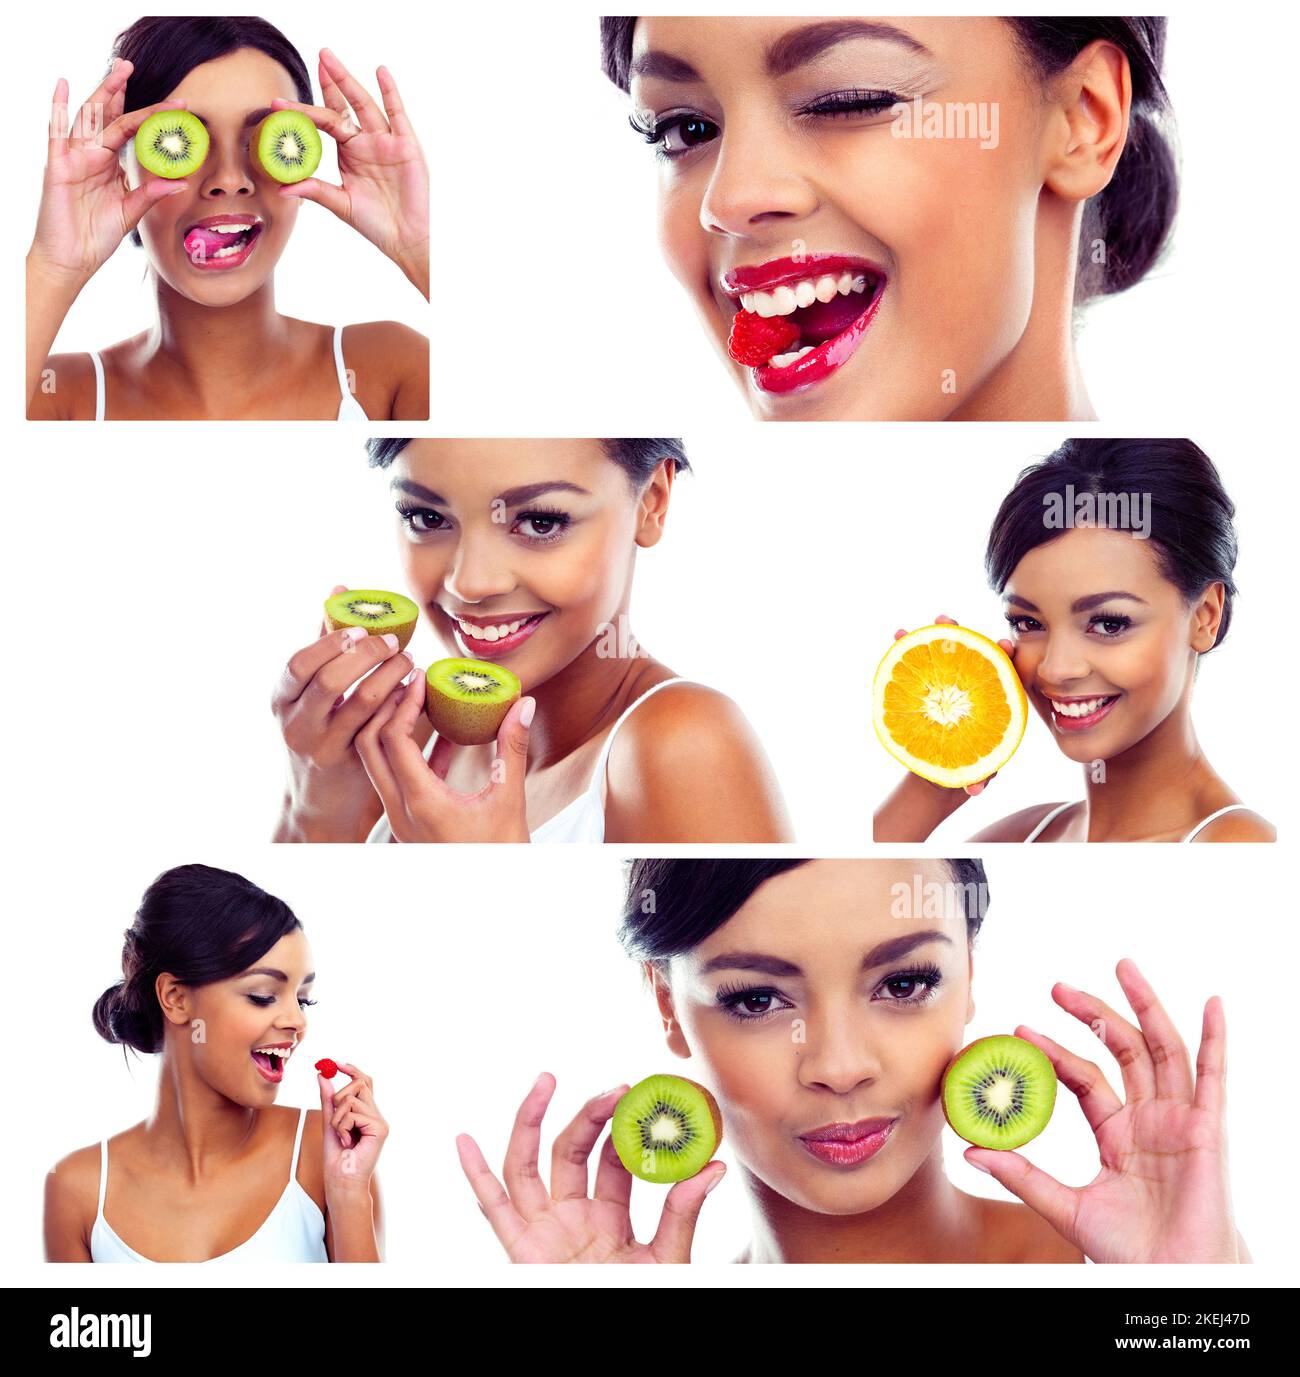 La bontà degli agrumi. Immagine composita di una giovane donna attraente in posa con vari frutti. Foto Stock